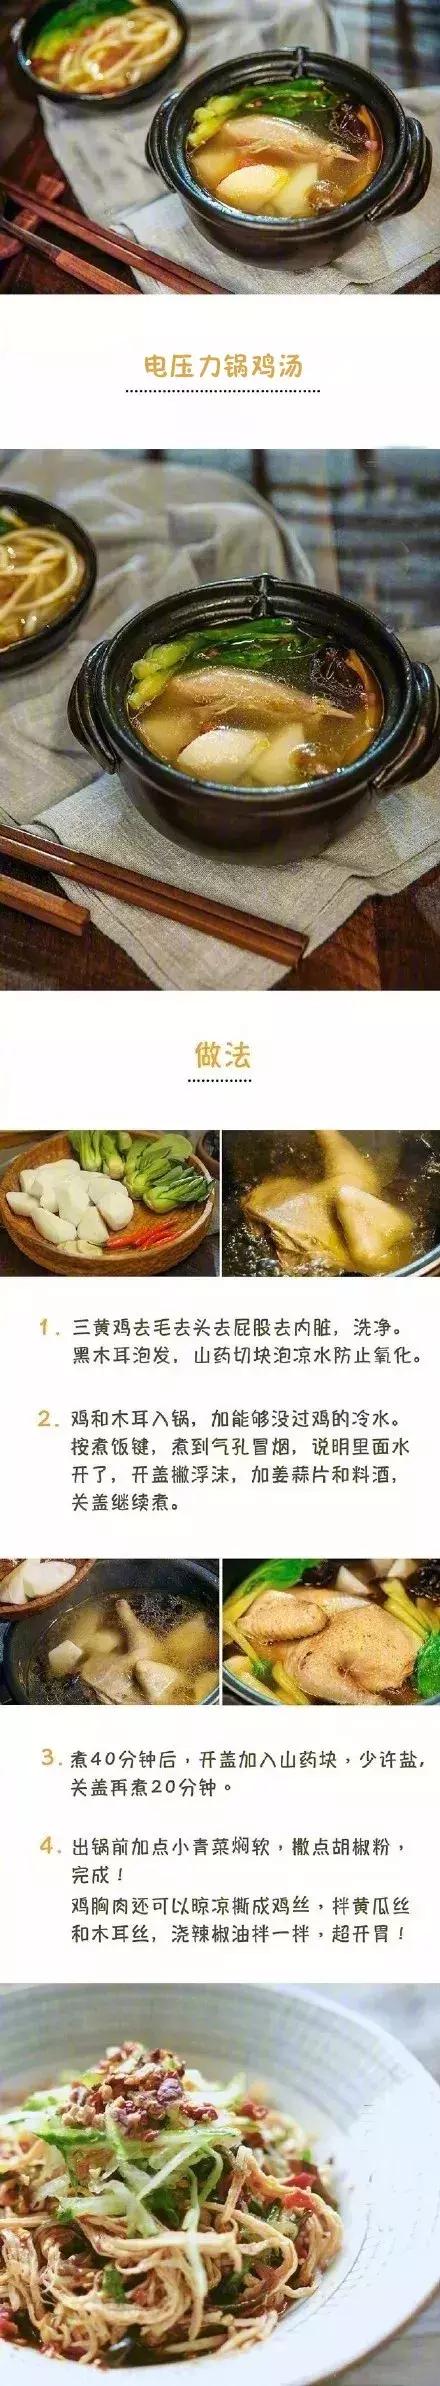 懒人食谱丨一口电压力锅烹制的9款美味